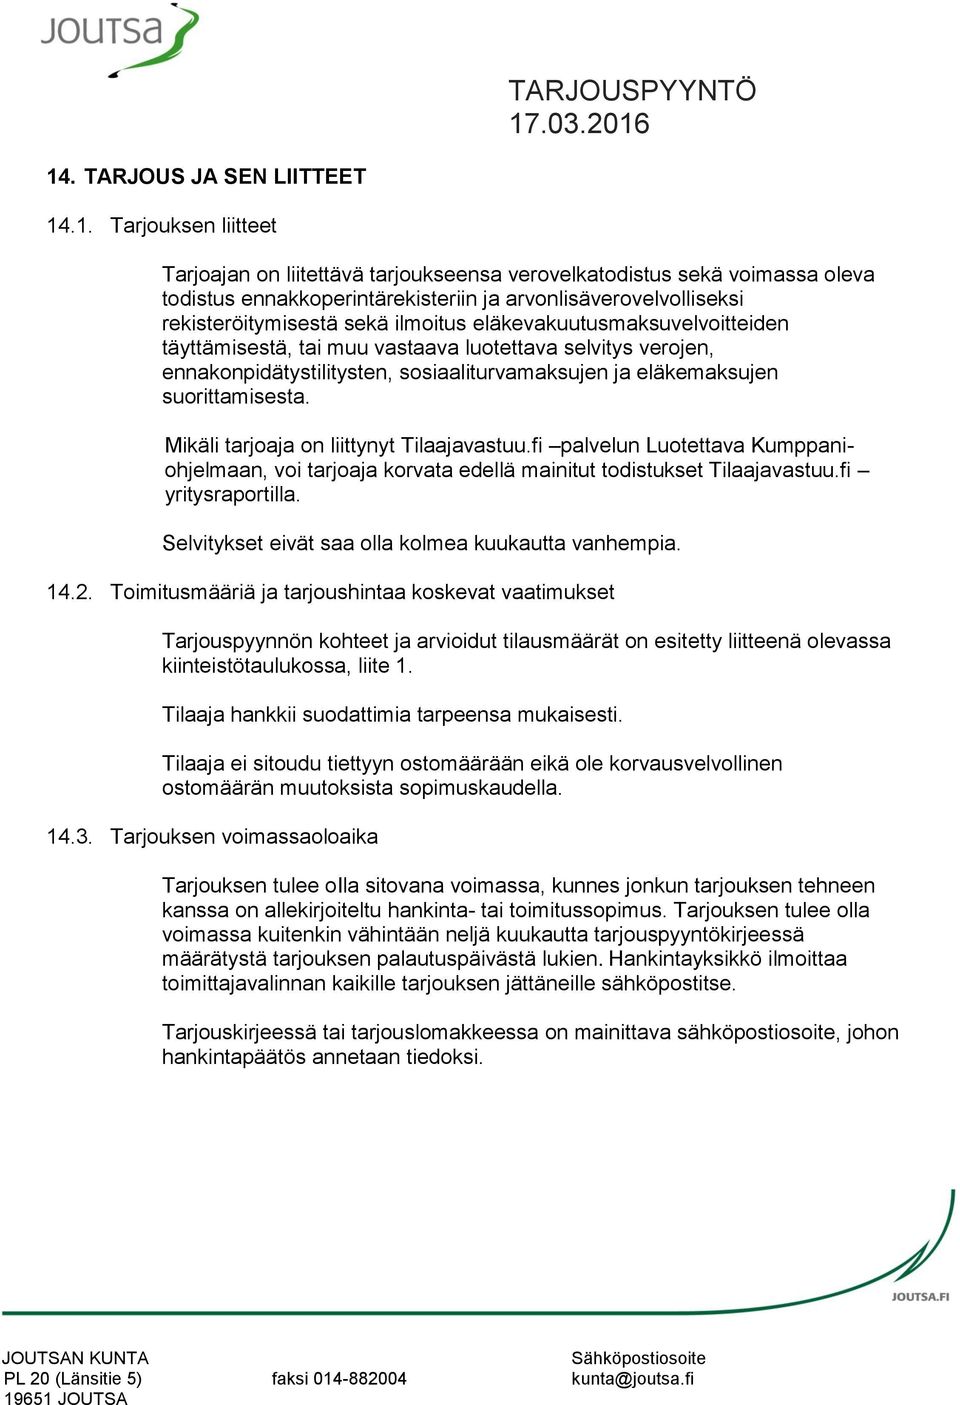 suorittamisesta. Mikäli tarjoaja on liittynyt Tilaajavastuu.fi palvelun Luotettava Kumppaniohjelmaan, voi tarjoaja korvata edellä mainitut todistukset Tilaajavastuu.fi yritysraportilla.